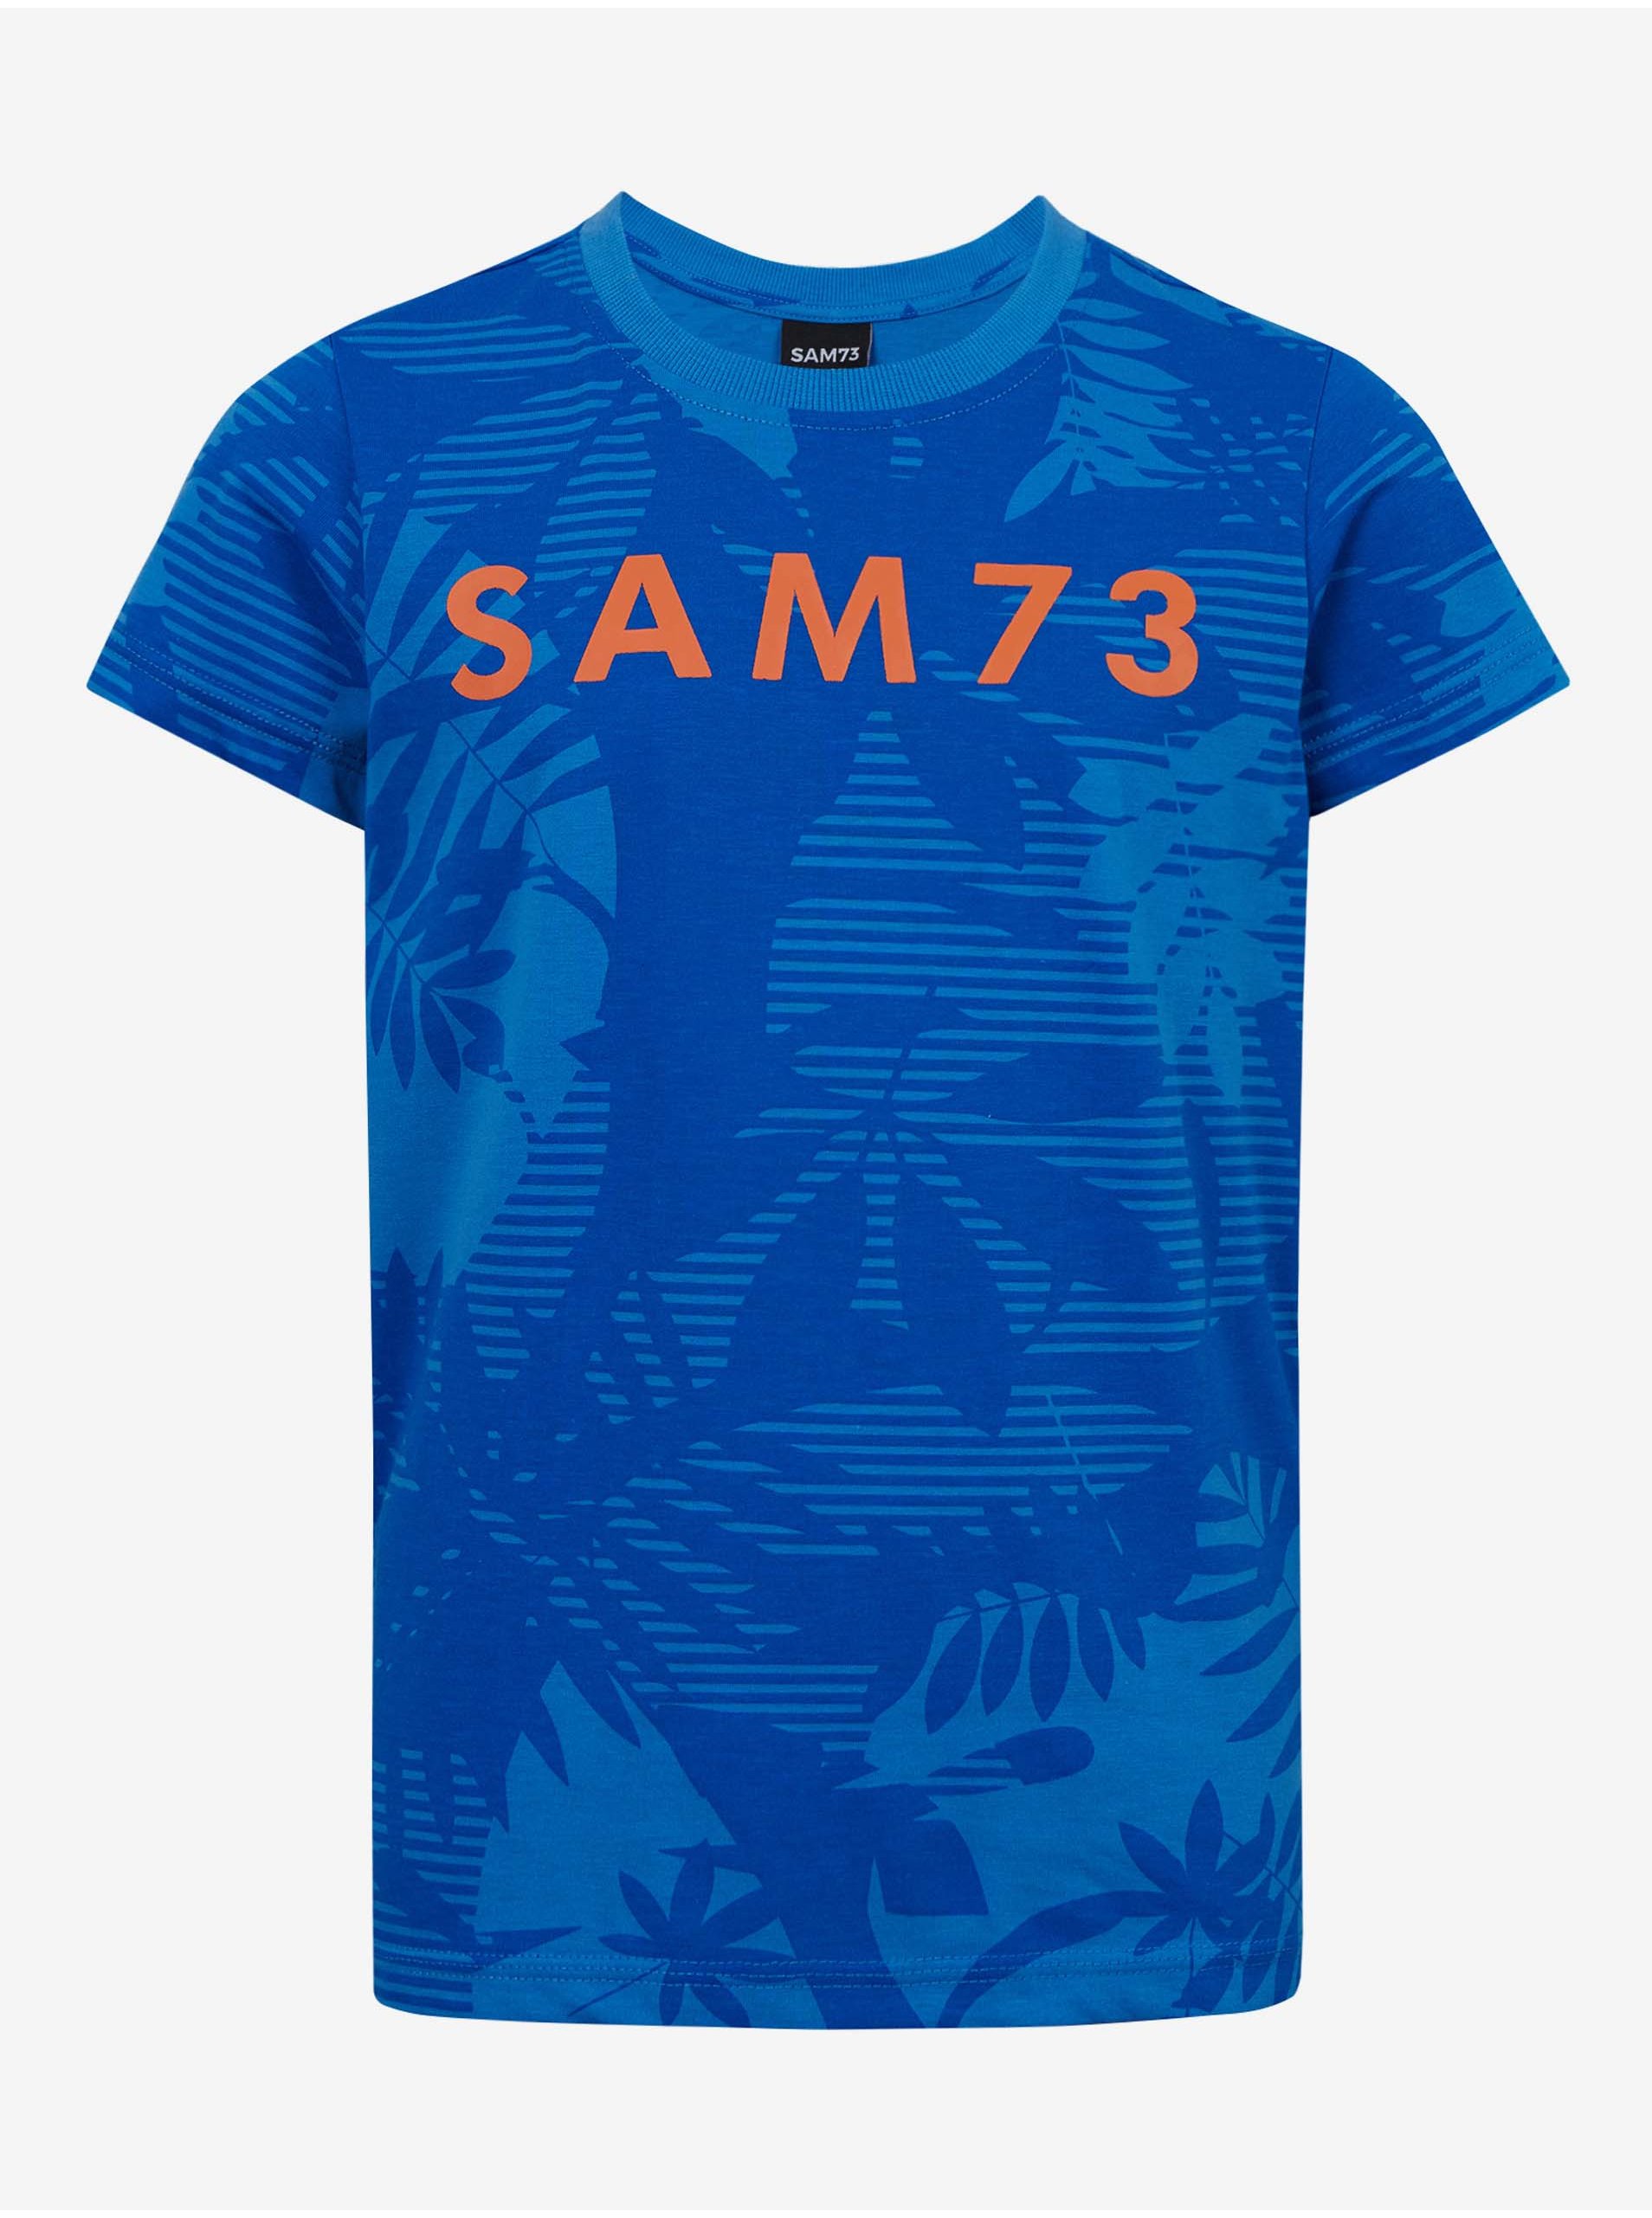 E-shop Modré chlapecké vzorované tričko SAM 73 Theodore